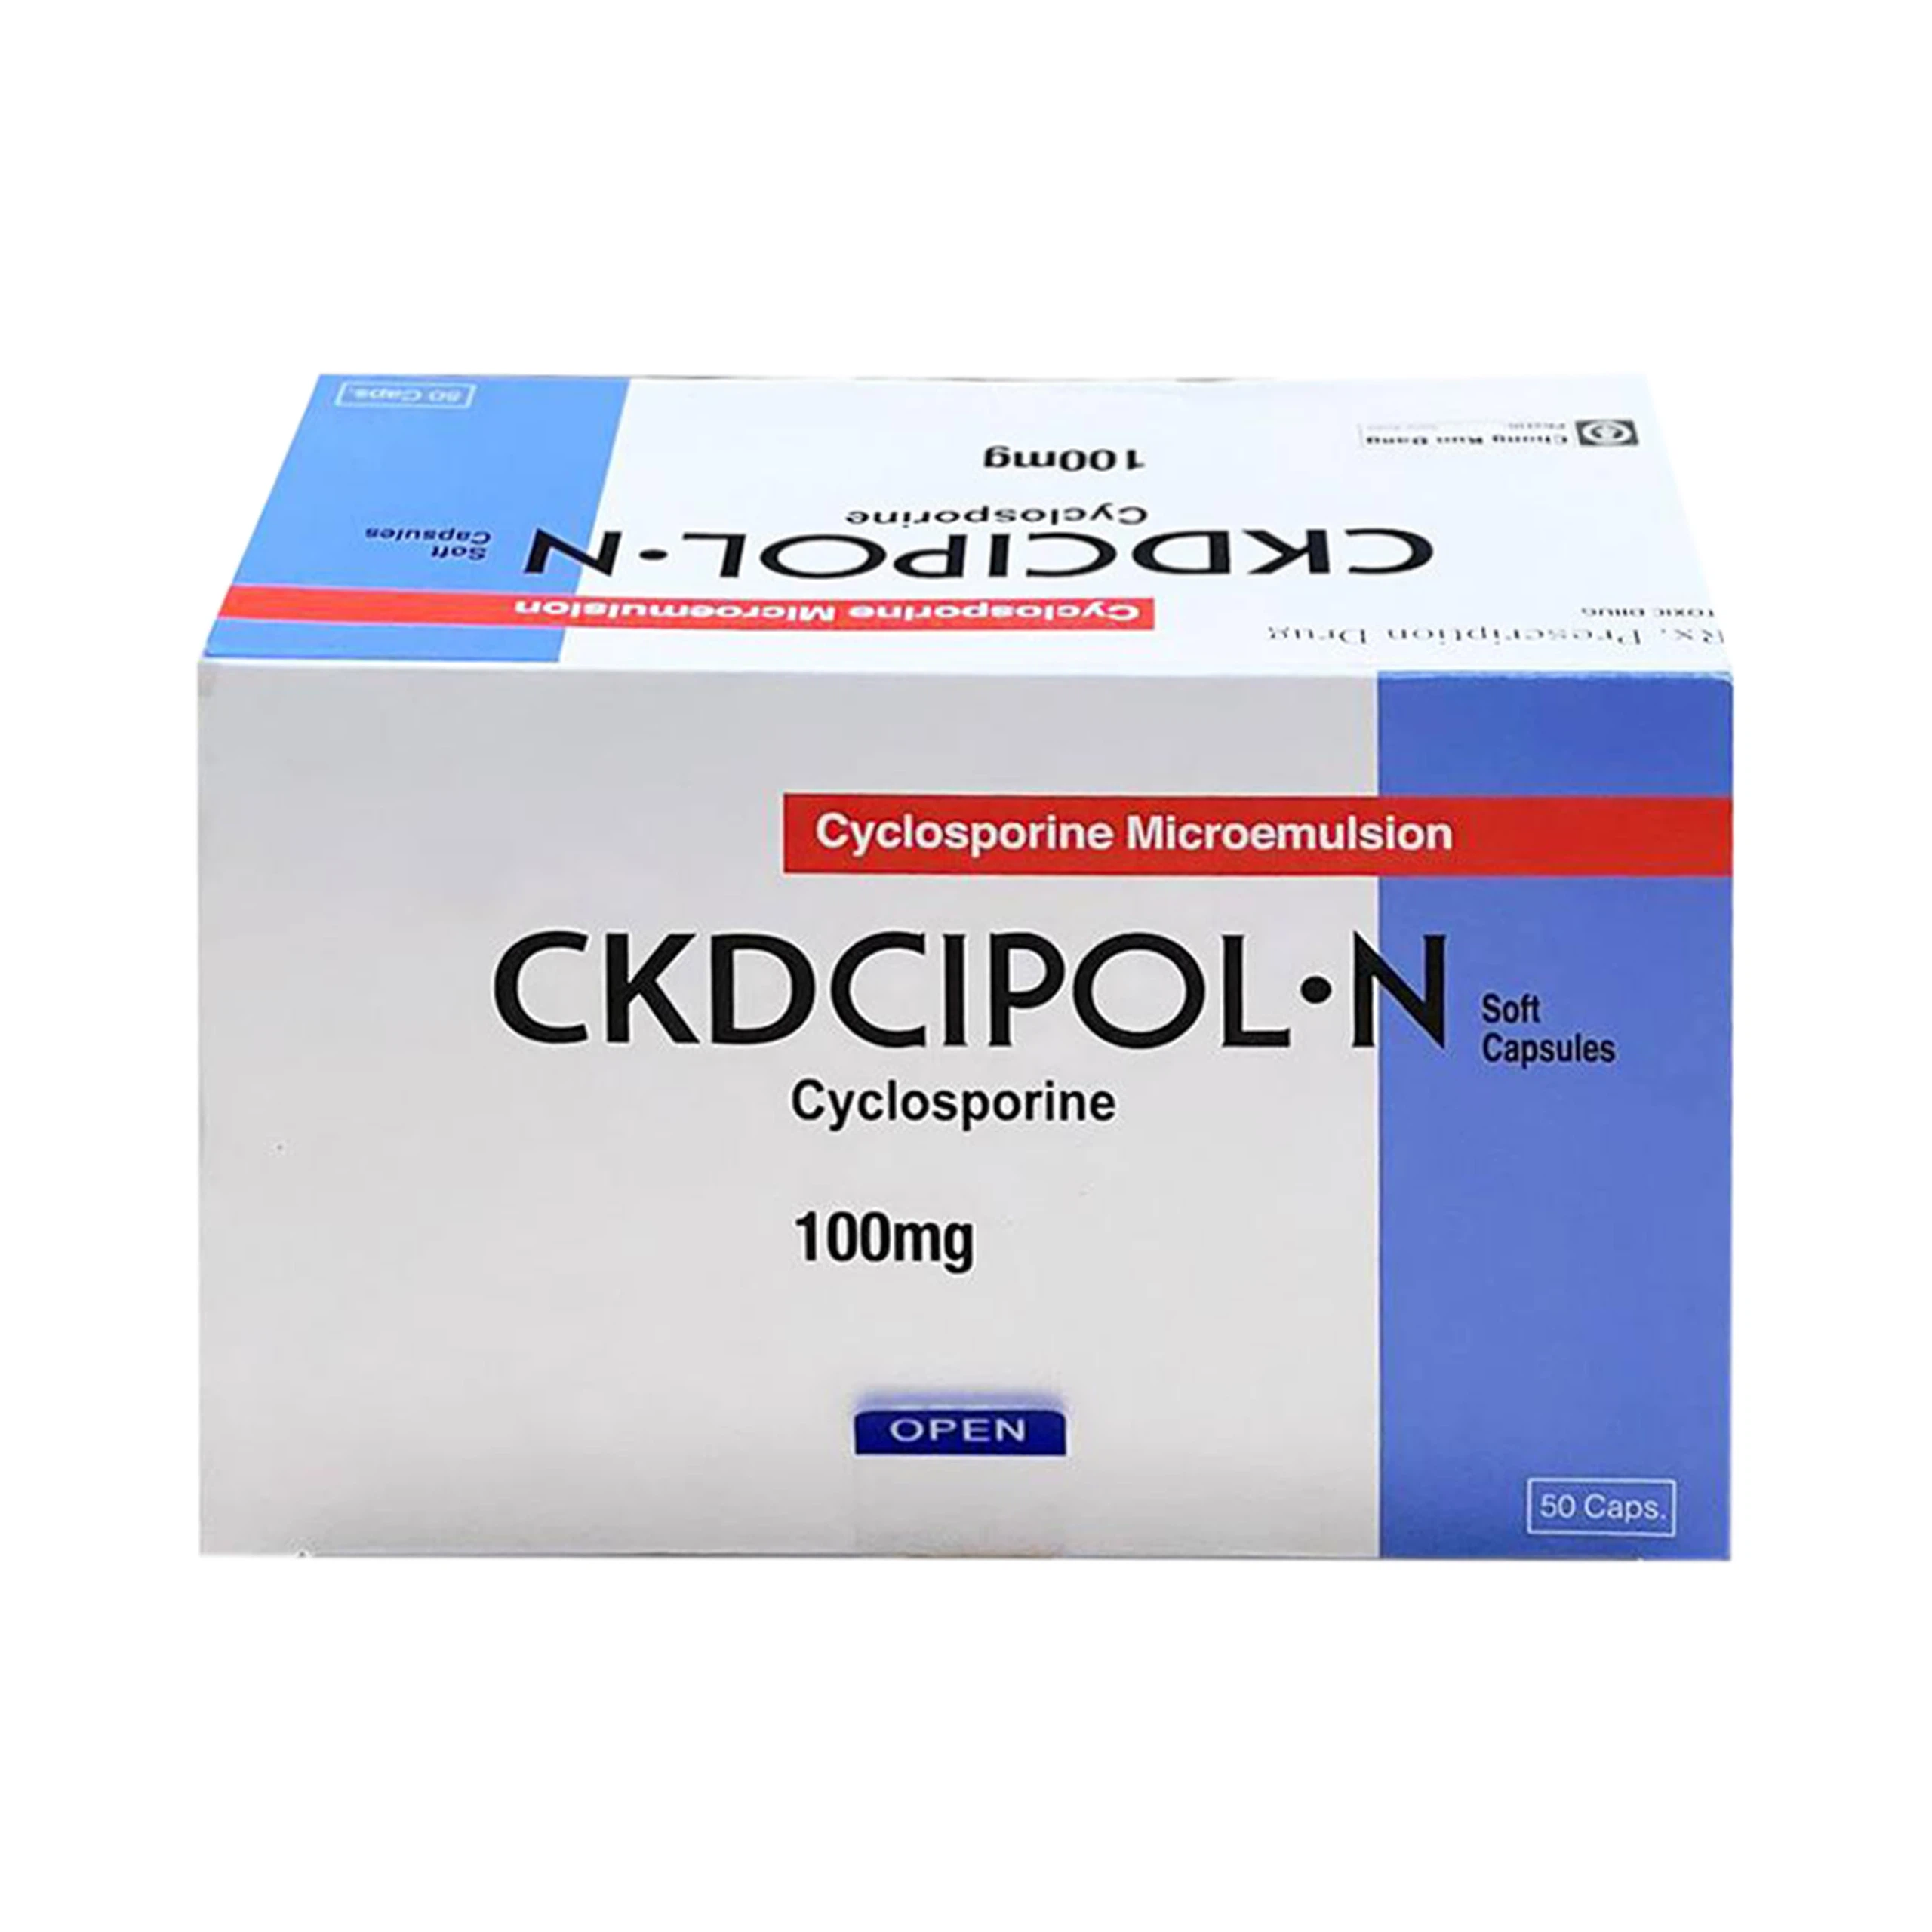 Thuốc Ckdcipol-N 100mg Suheung ngăn đào thải trong ghép tạng (10 vỉ x 5 viên)